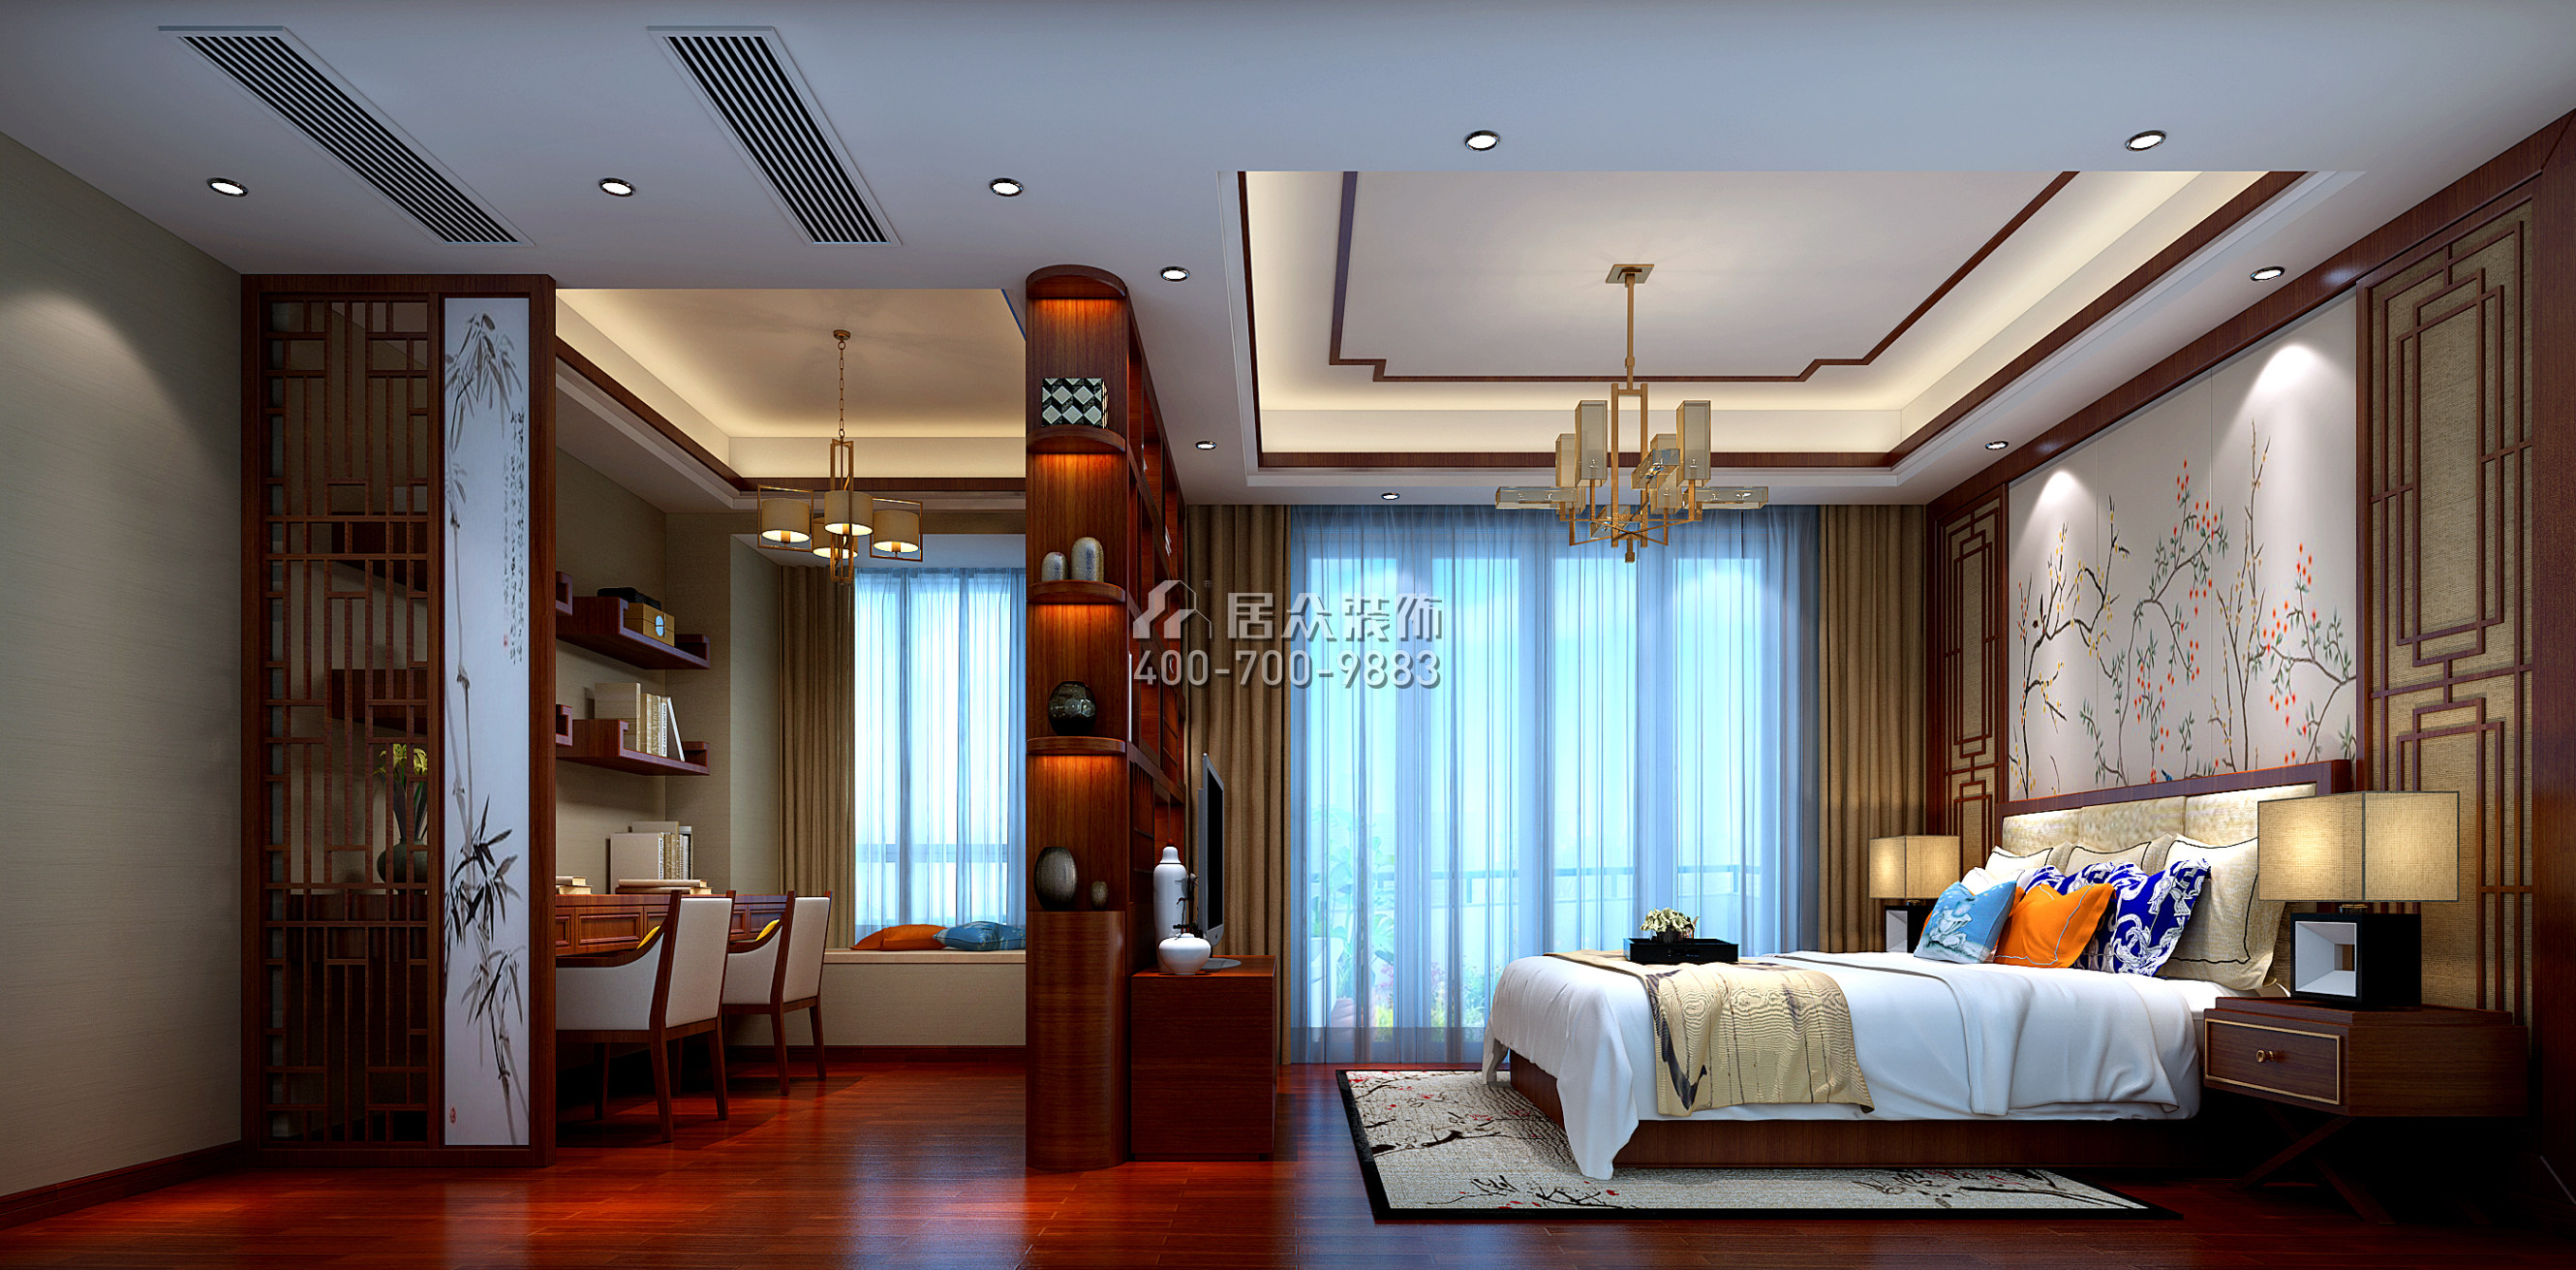 皓翔壹城中心240平方米中式风格平层户型卧室装修效果图